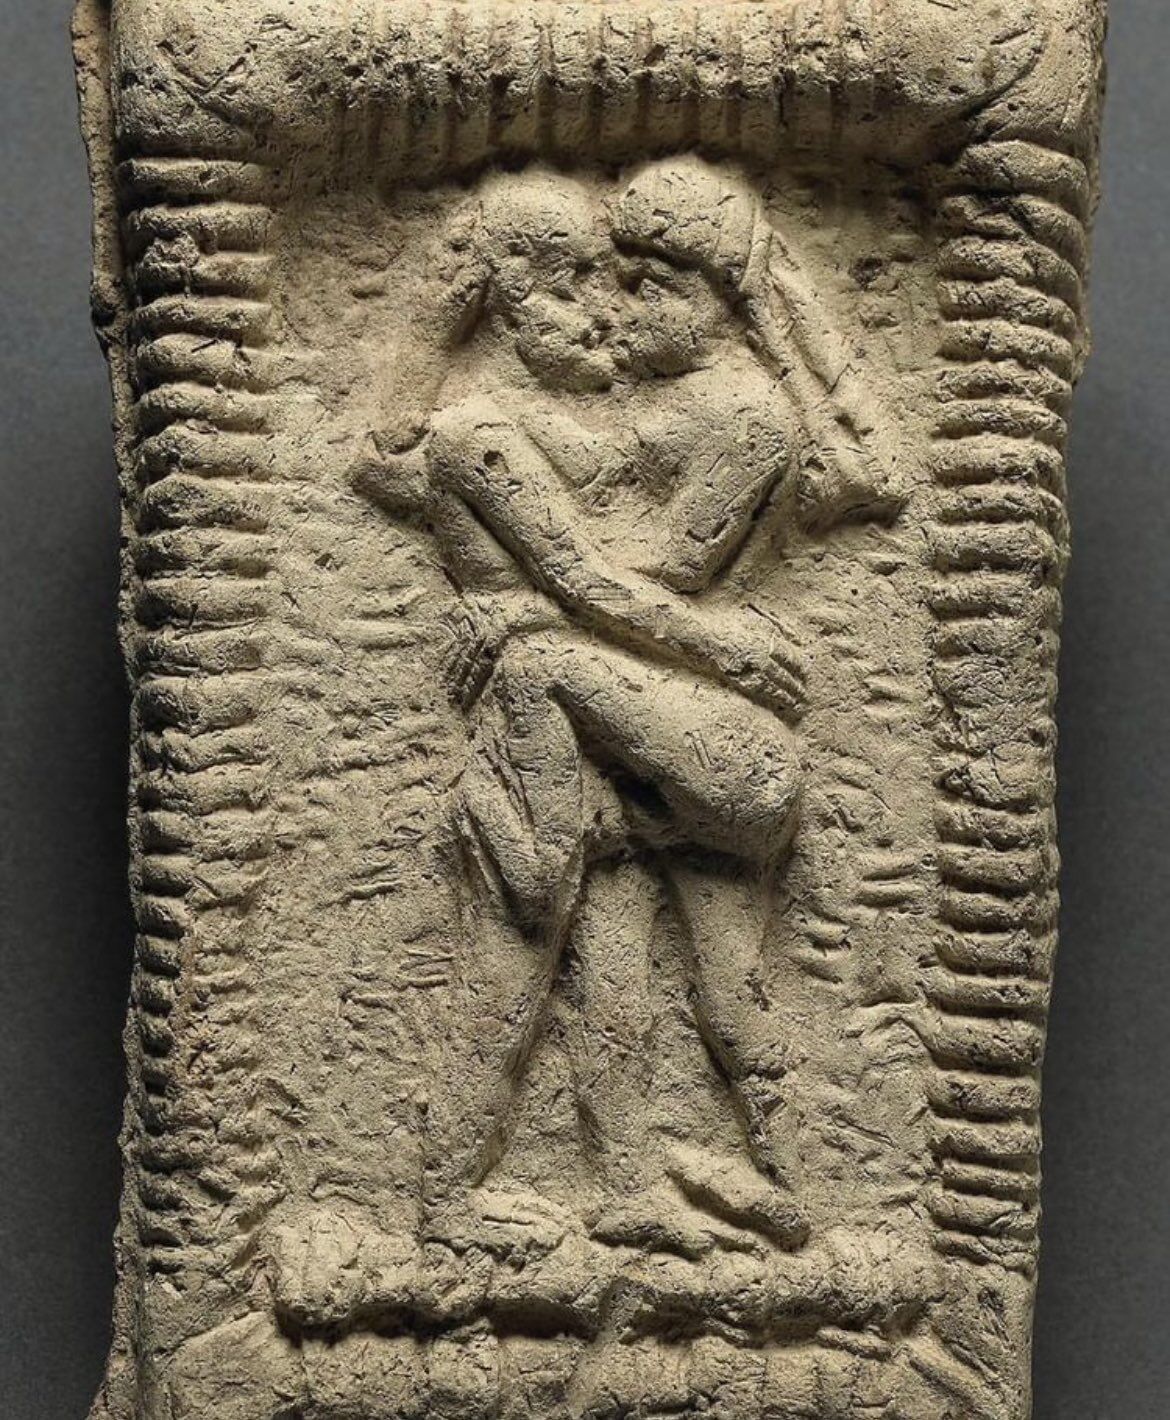 Первый поцелуй состоялся 4500 лет назад: археологи обнаружили глиняное доказательство (фото)